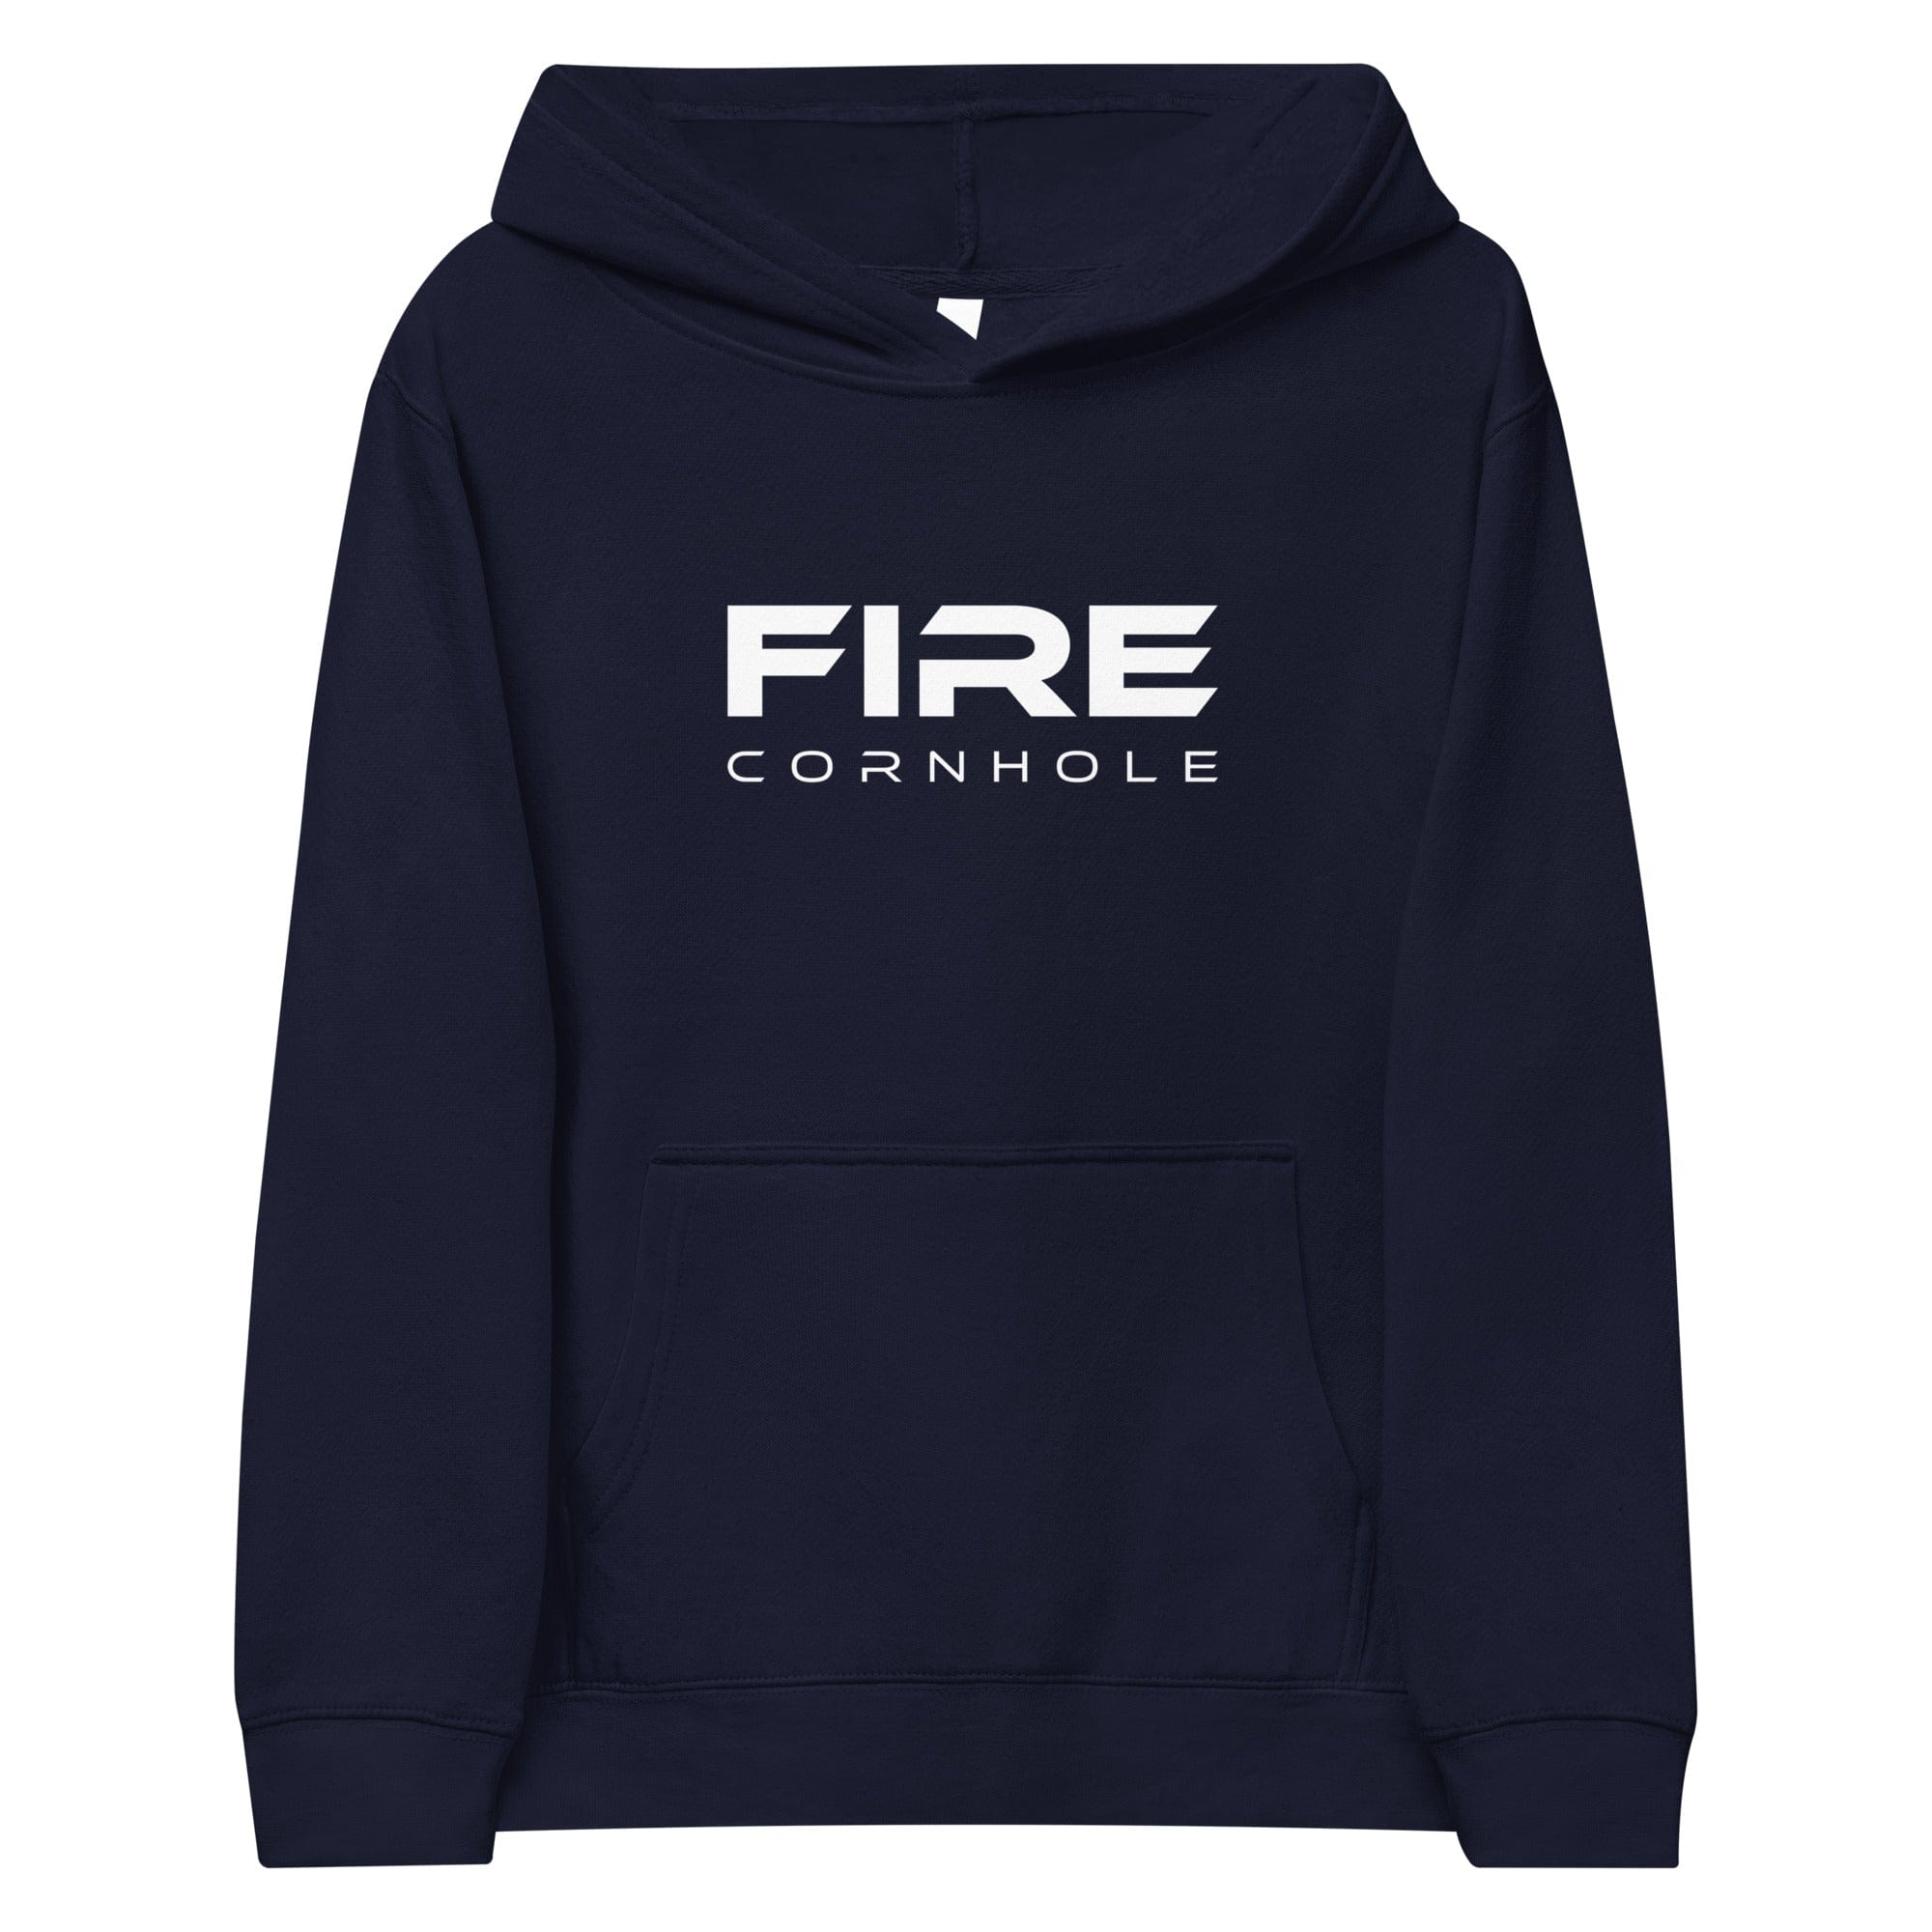 Navy kids fleece hoodie with Fire Cornhole logo in white